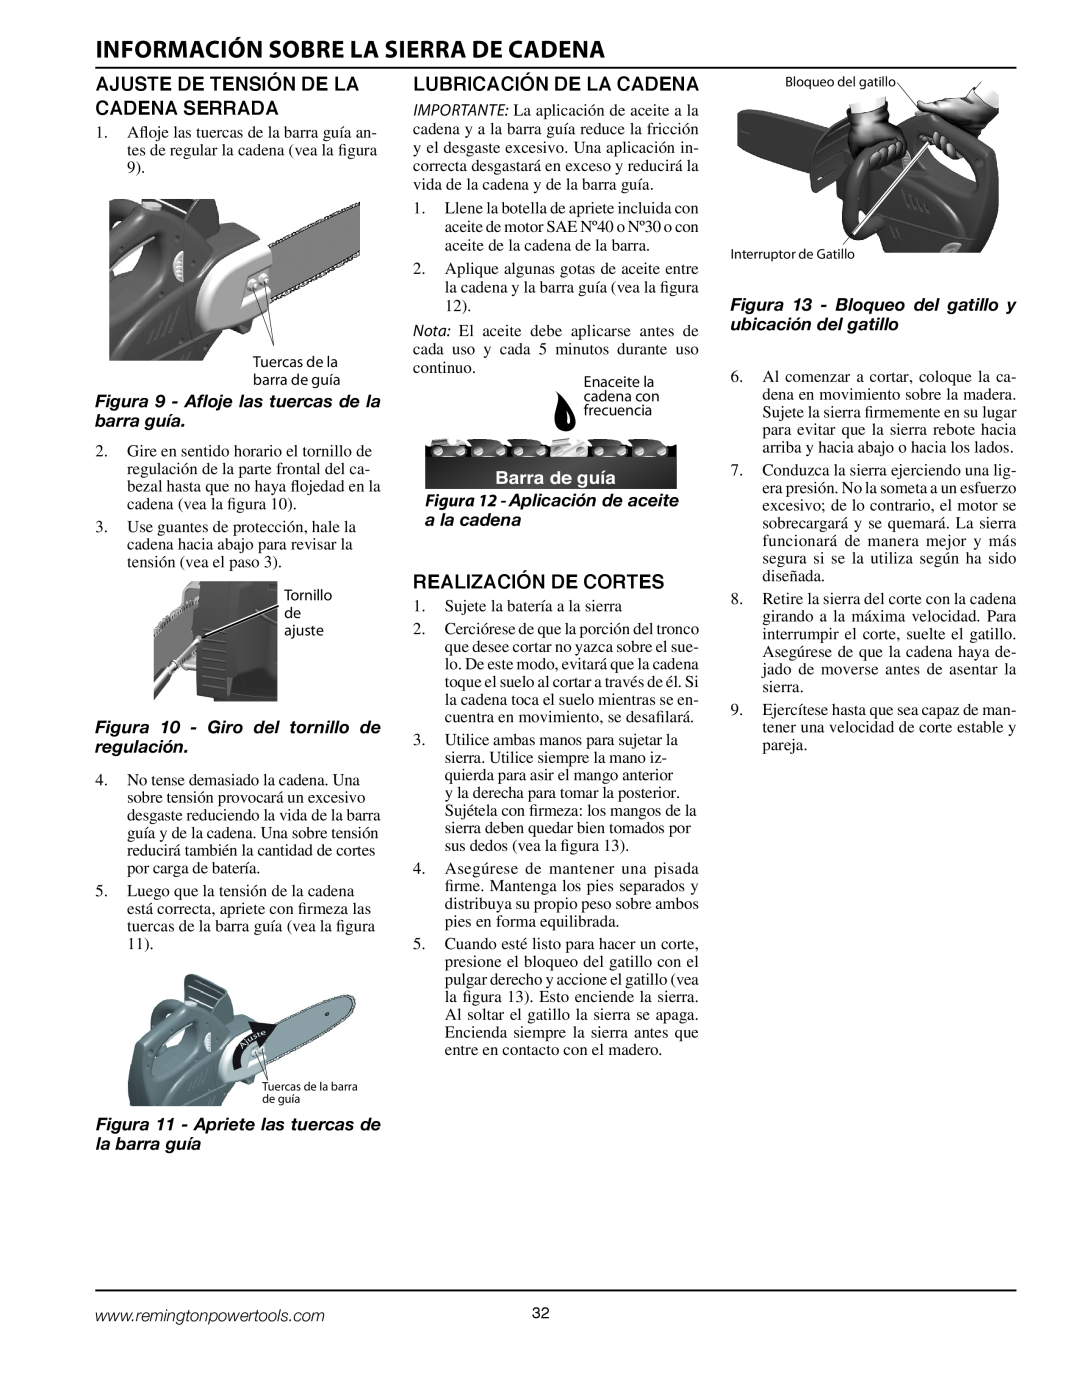 Remington BPS188A Información Sobre La Sierra De Cadena, Ajuste De Tensión De La Cadena Serrada, Lubricación De La Cadena 